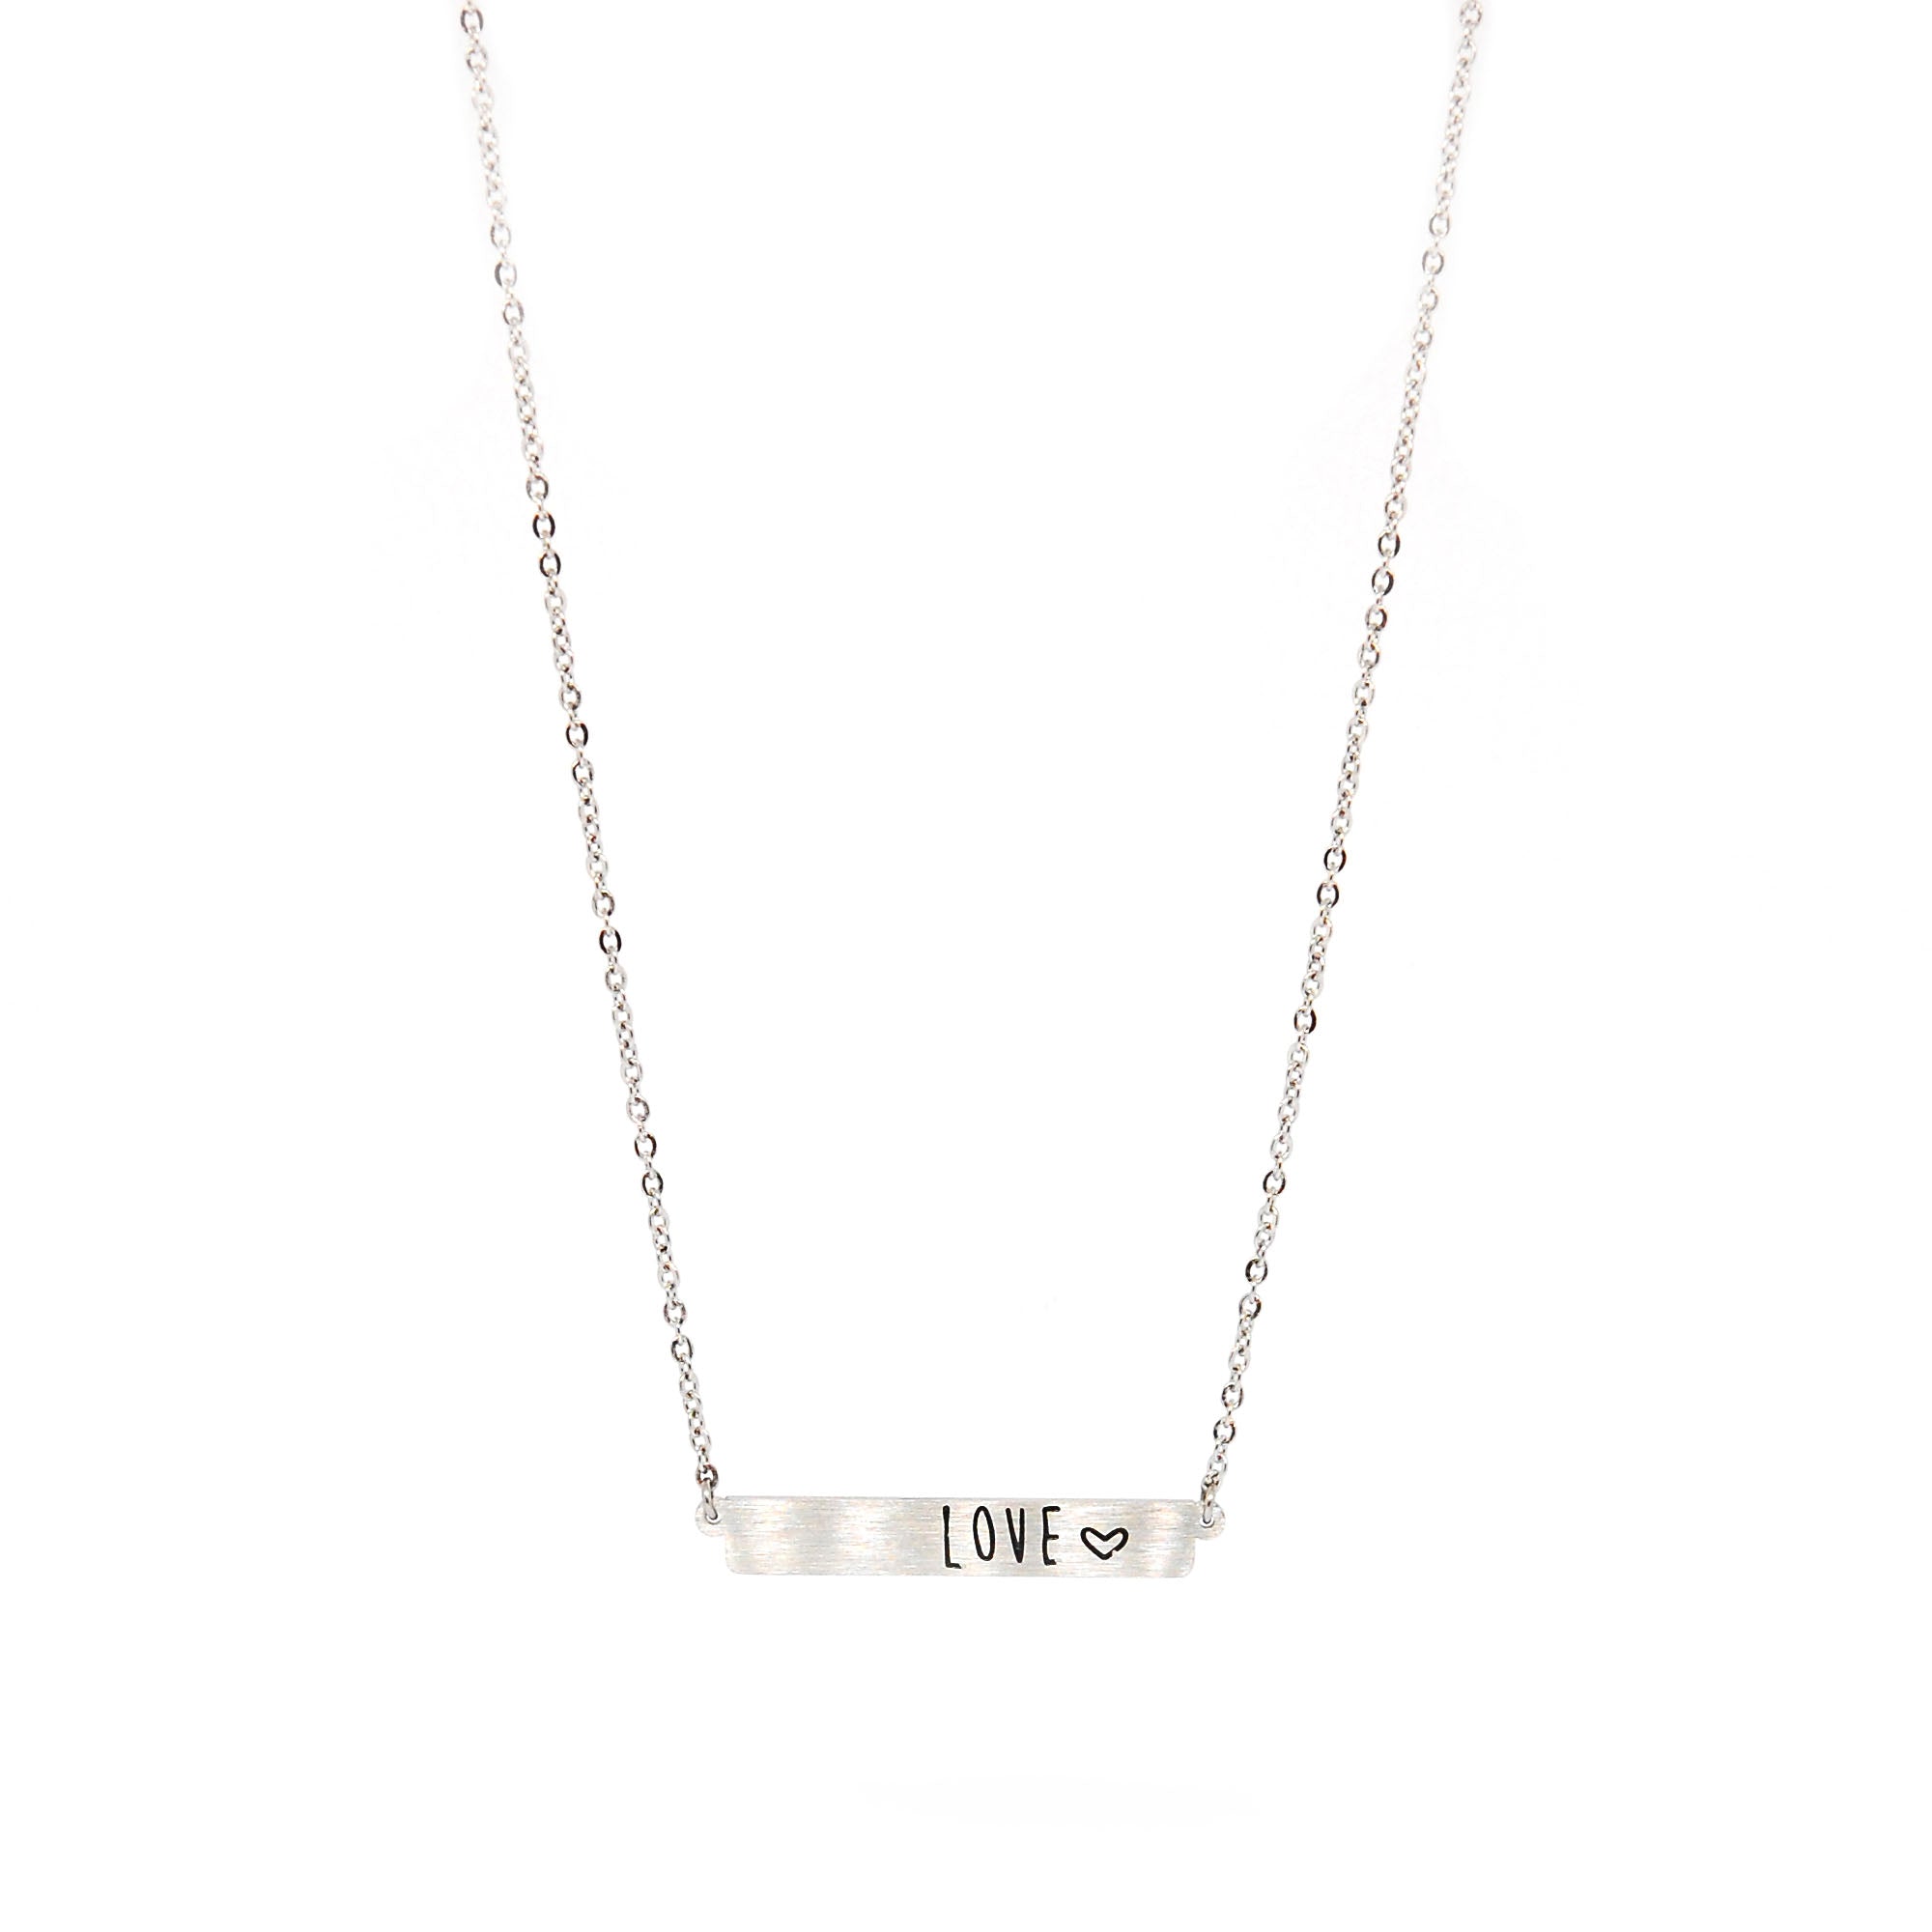 ESN 5704: Love Bar Necklace w/ 18" + 2" Chain